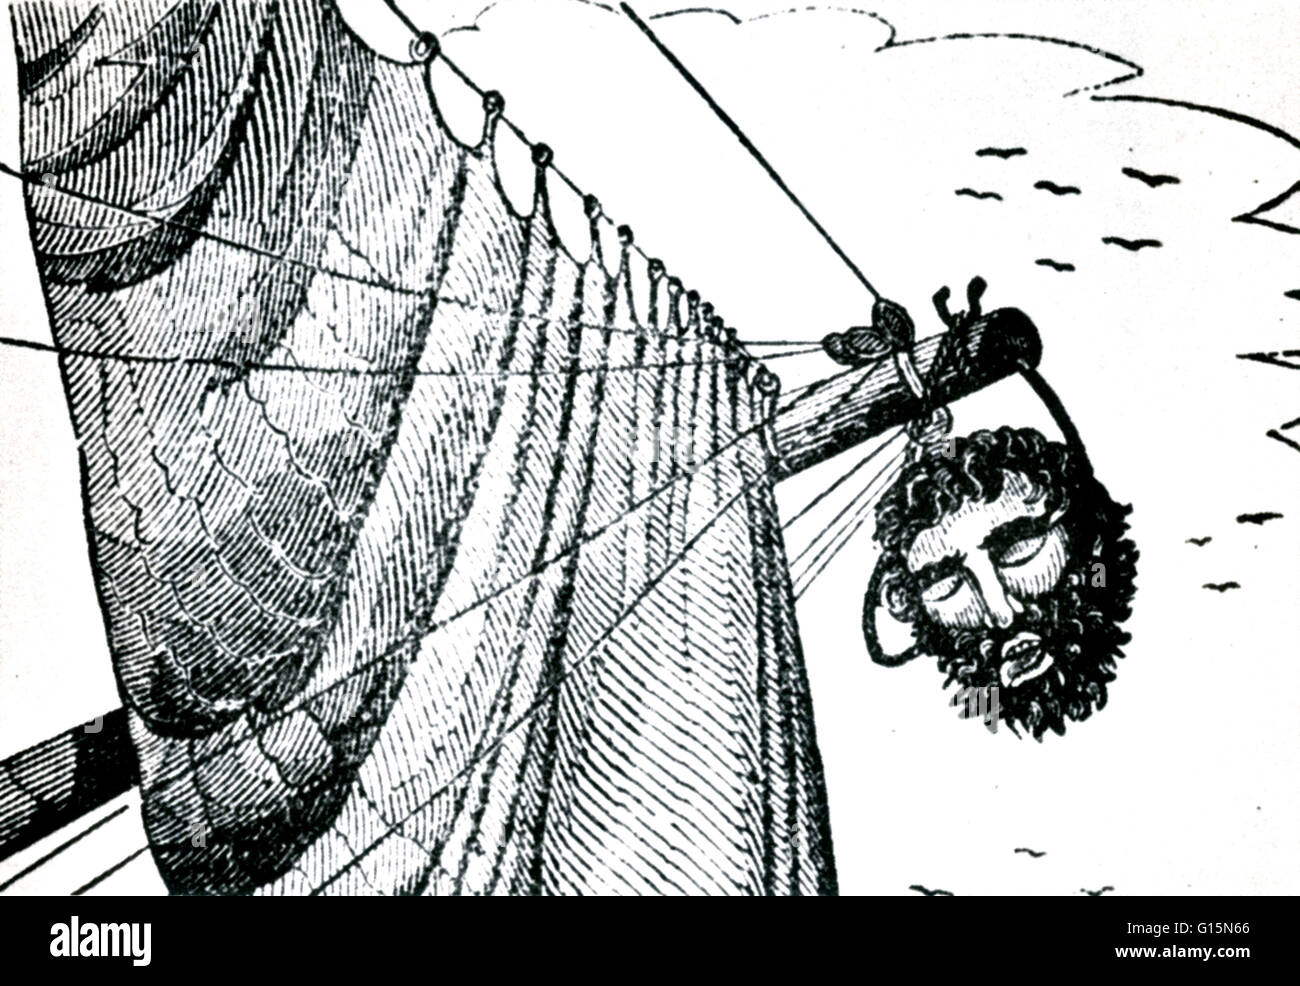 Kupferstich von Blackbeards abgetrennten Kopf aus die Piraten eigenen Buch, 1837. Edward Teach (1680 - 22. November 1718), besser bekannt als Blackbeard, war einen berüchtigten englischen Piraten, um die Westindischen Inseln und der Ostküste der amerikanischen Kolonien betrieben. Stockfoto